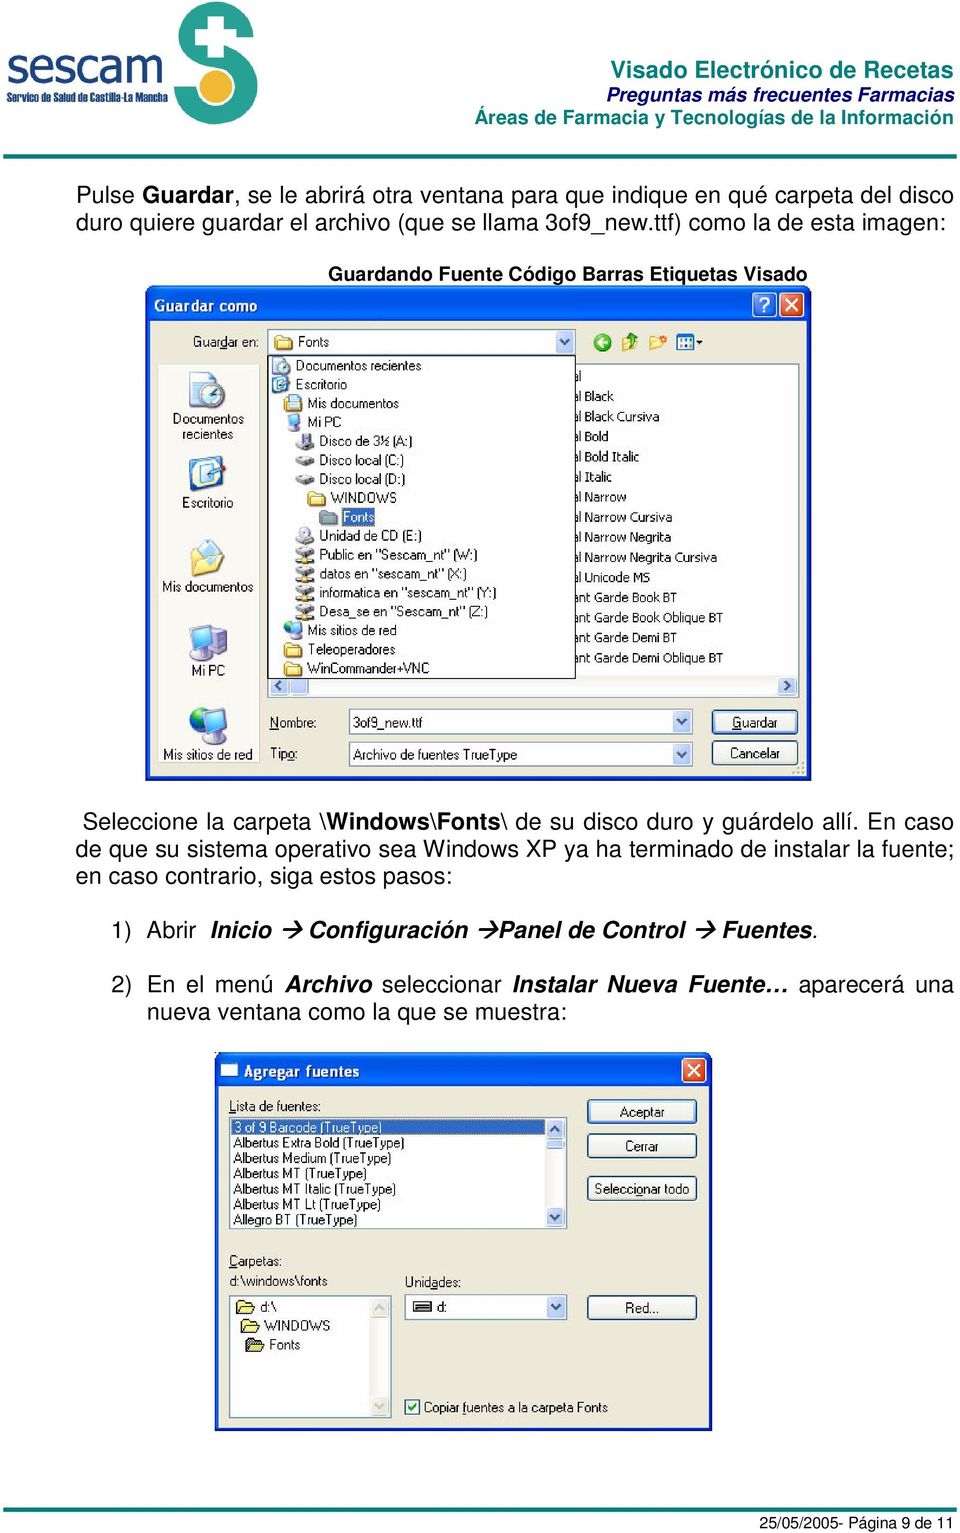 En caso de que su sistema operativo sea Windows XP ya ha terminado de instalar la fuente; en caso contrario, siga estos pasos: 1) Abrir Inicio